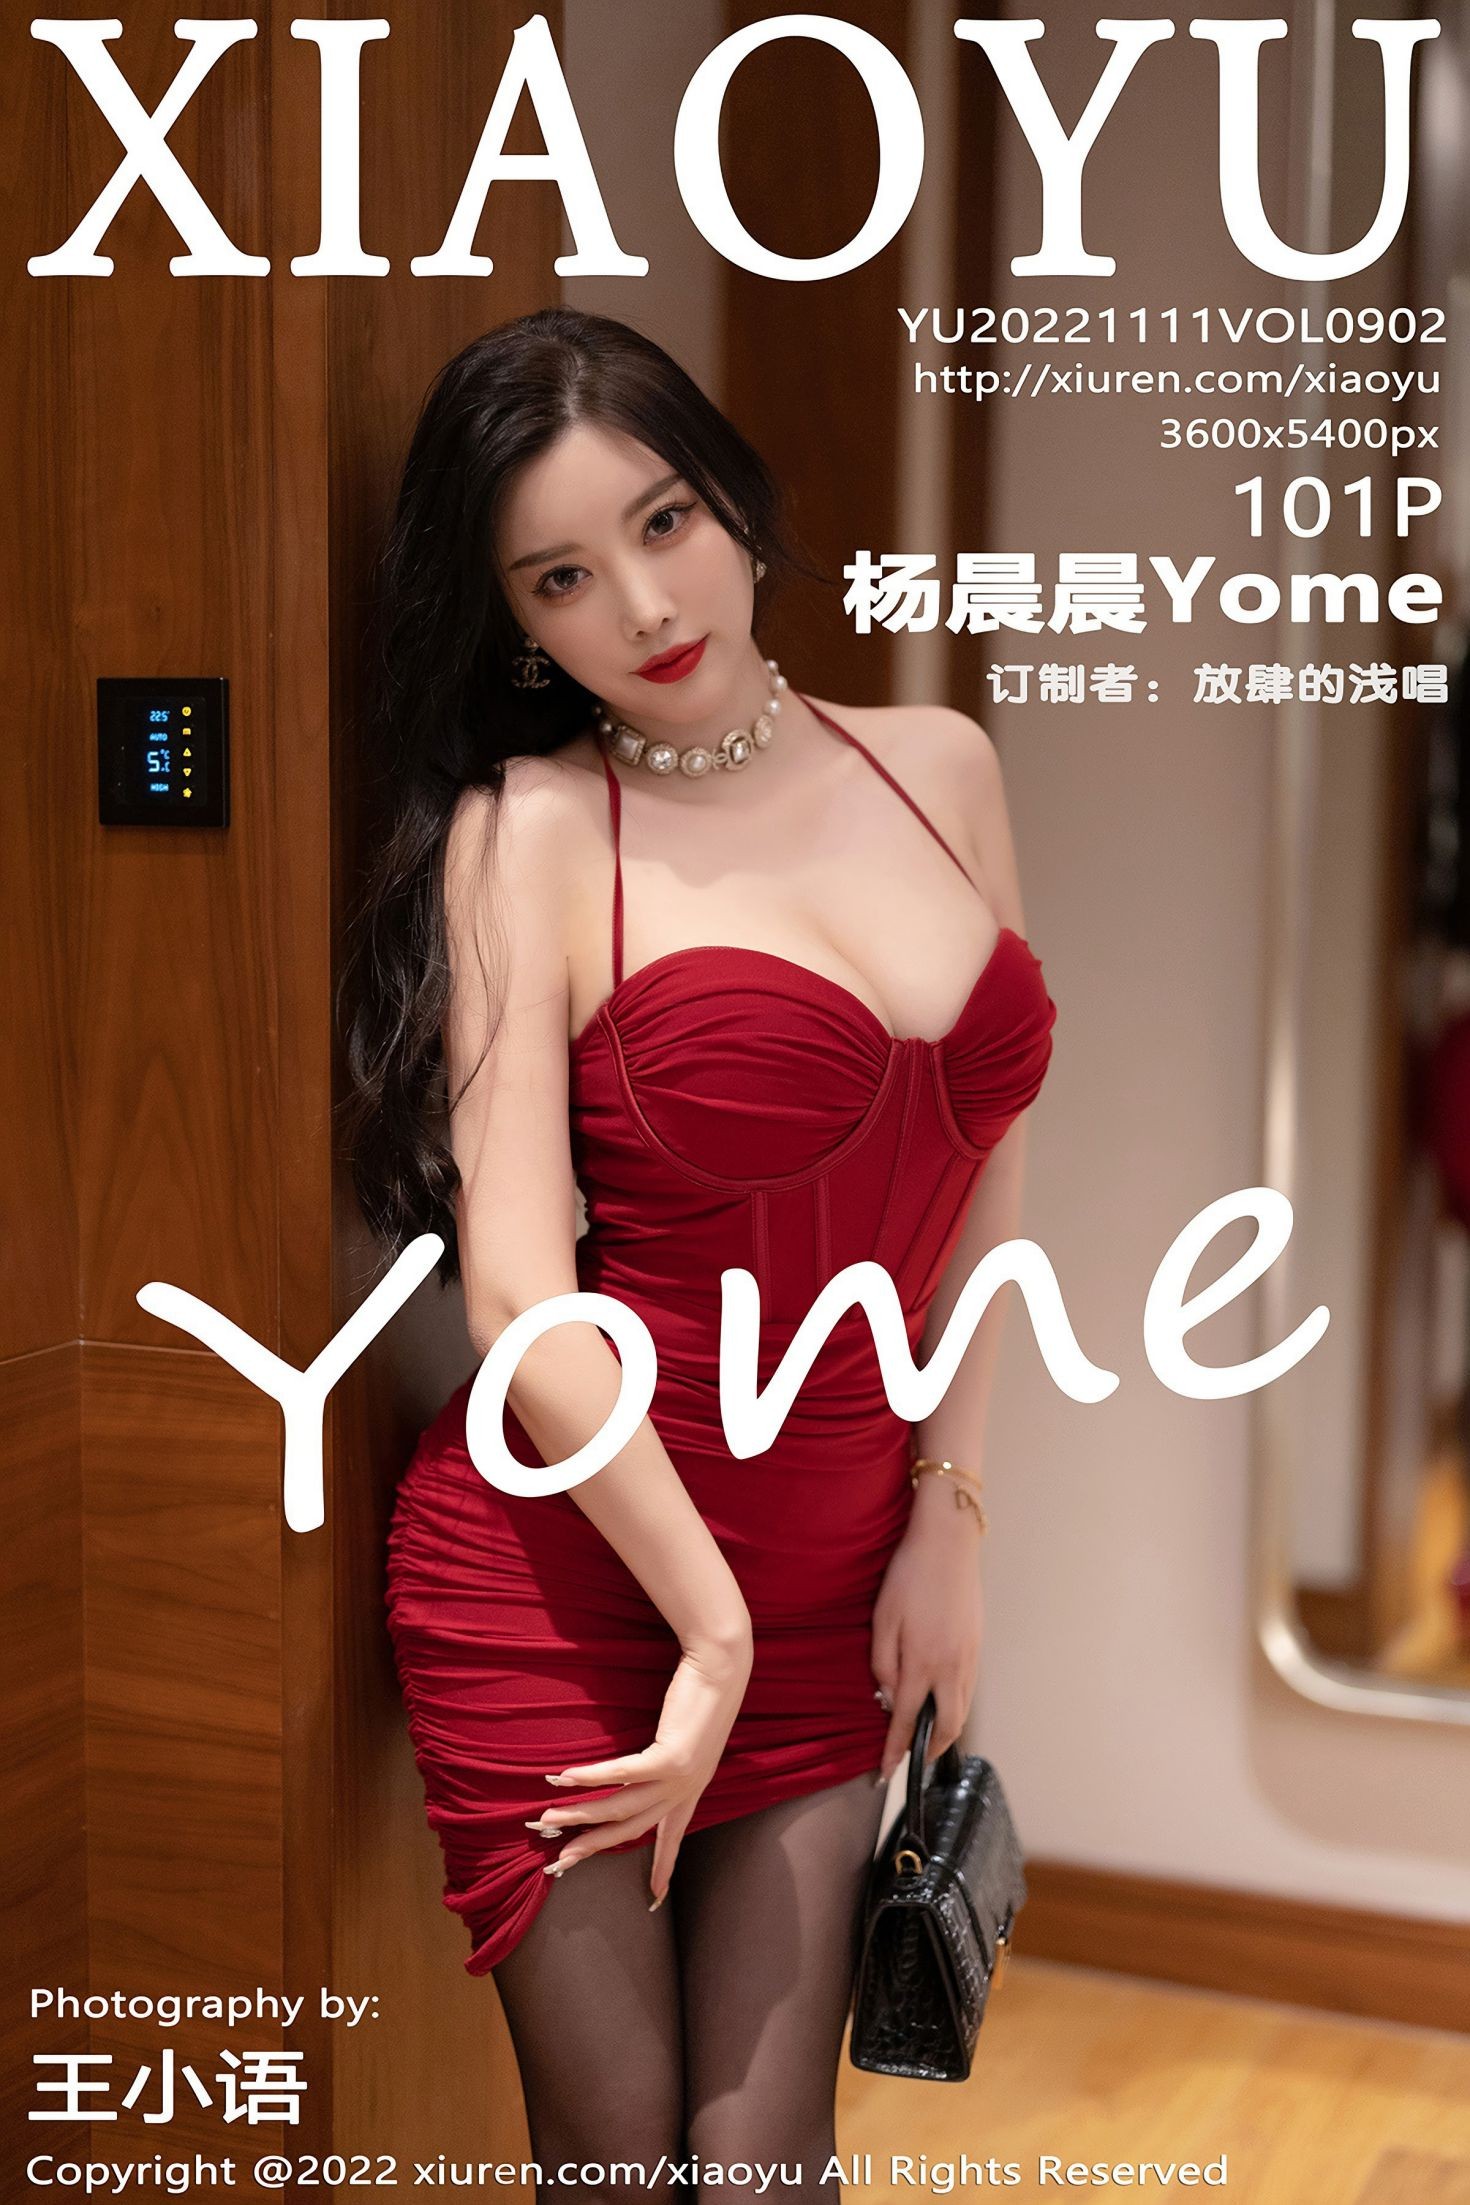 XIAOYU语画界性感模特写真第Vol.902期杨晨晨Yome (103)